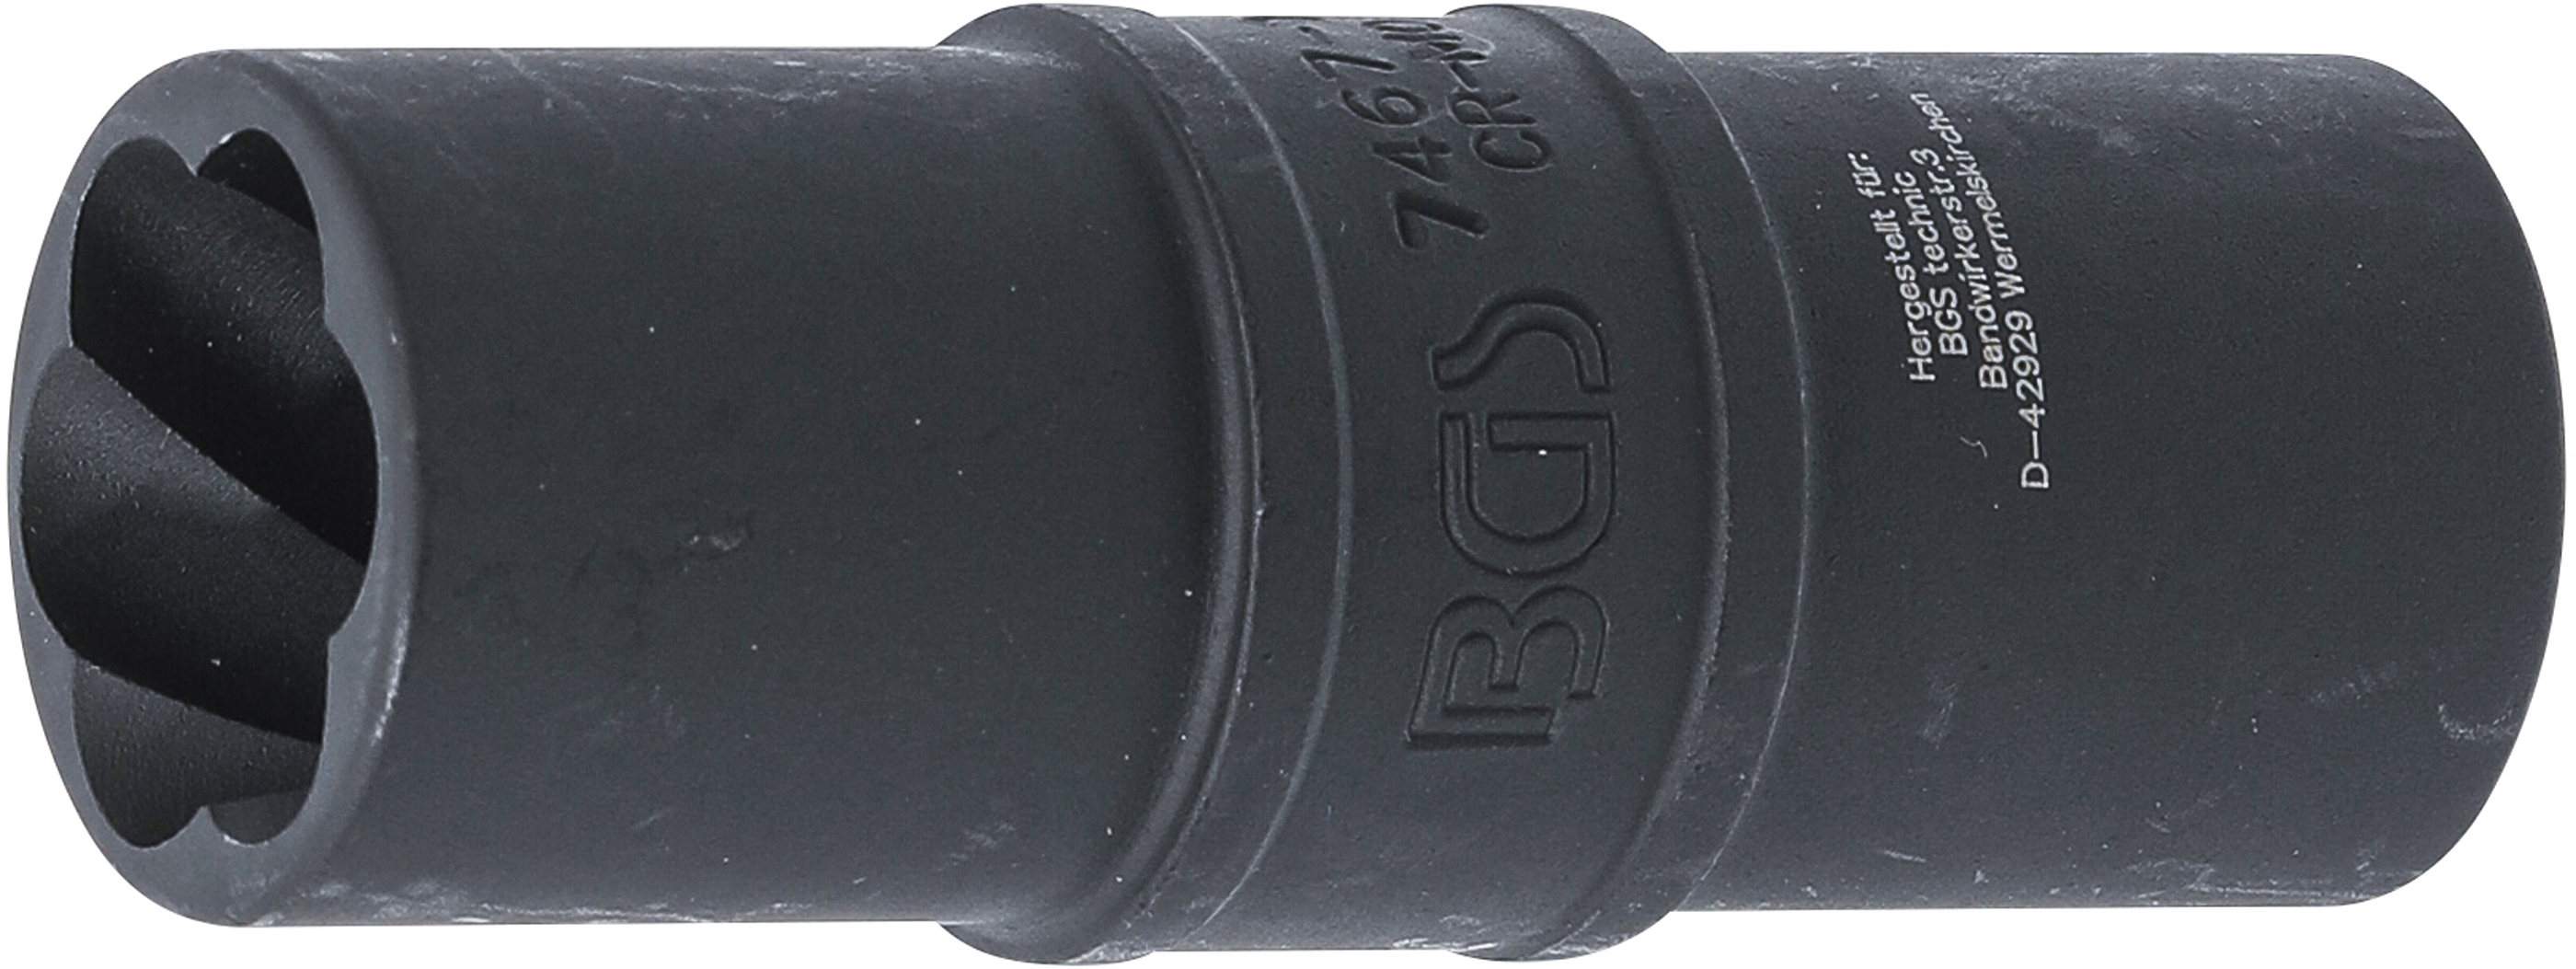 BGS 7467-19 Extractor pentru prezoane de roti deteriorate 19 mm, antrenare 12,5 mm (1/2")